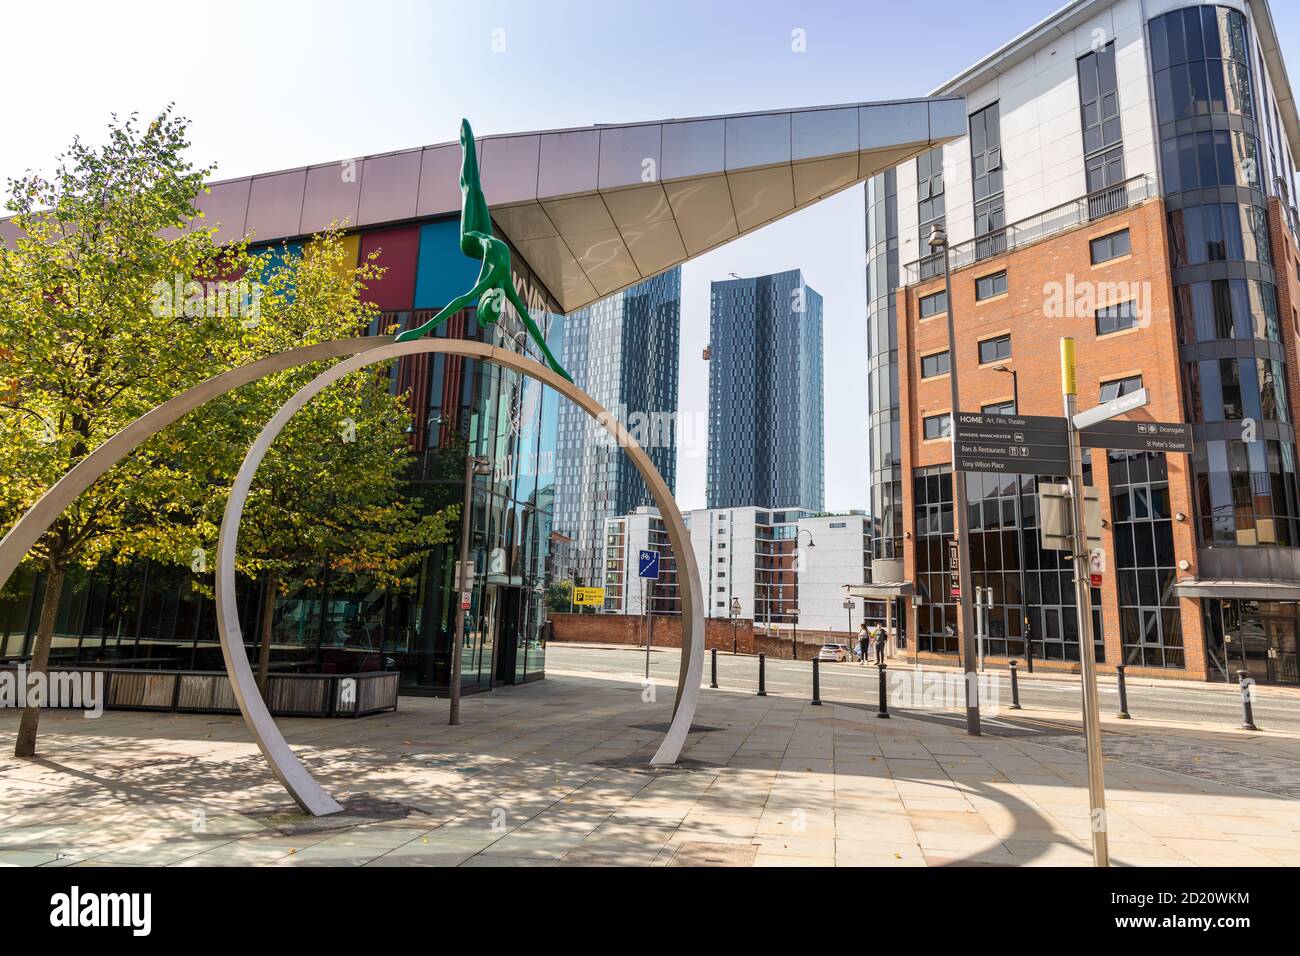 Architettura moderna e opere d'arte nel centro di Manchester, vicino a Deansgate, Regno Unito. Foto Stock